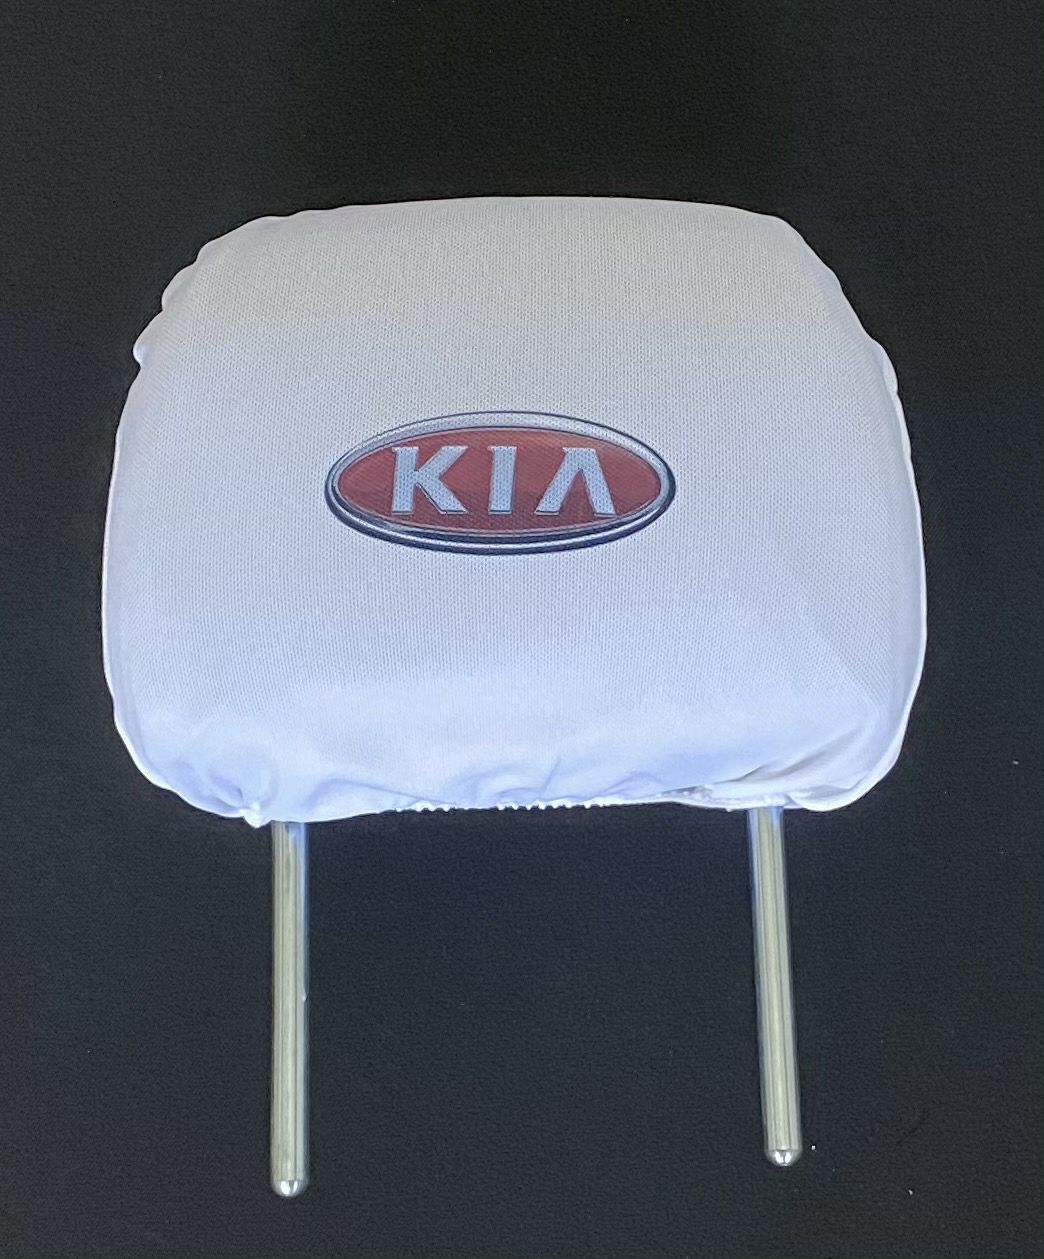 Biele návleky na opierky hlavy s logom Kia